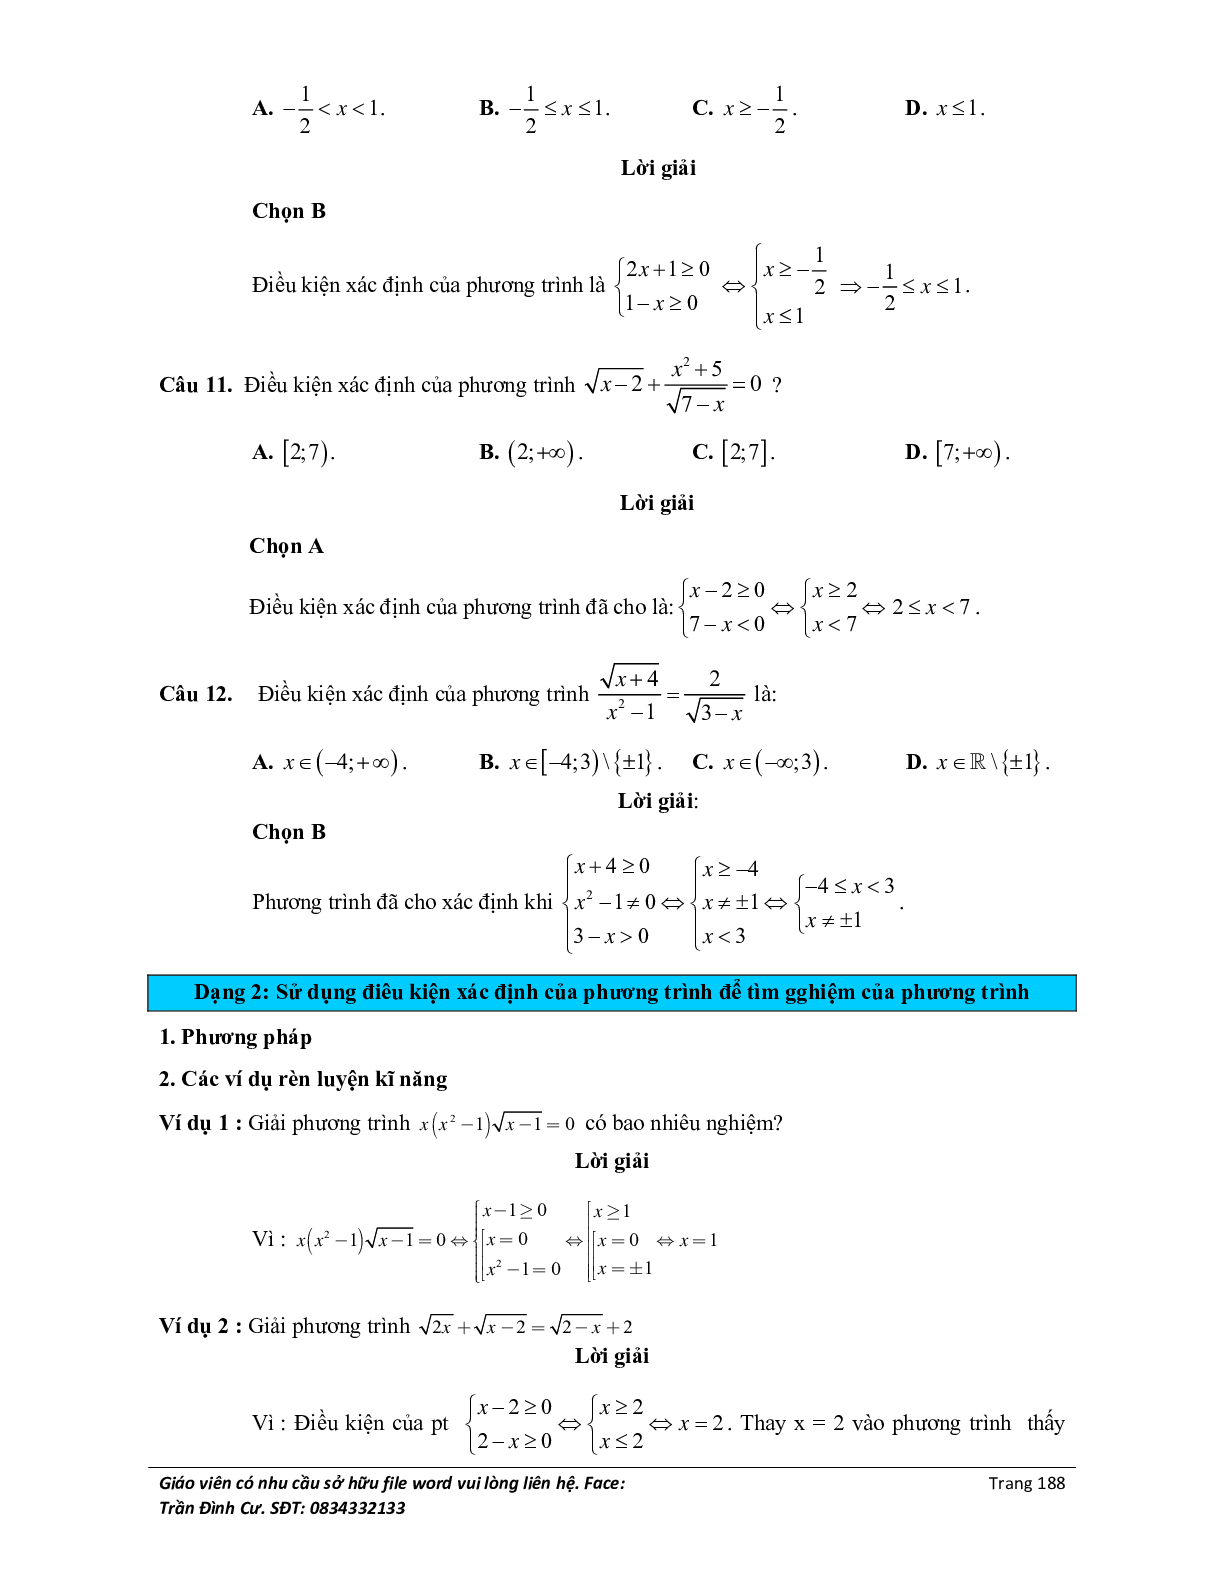 Đại cương về phương trình môn Toán lớp 10 (trang 6)